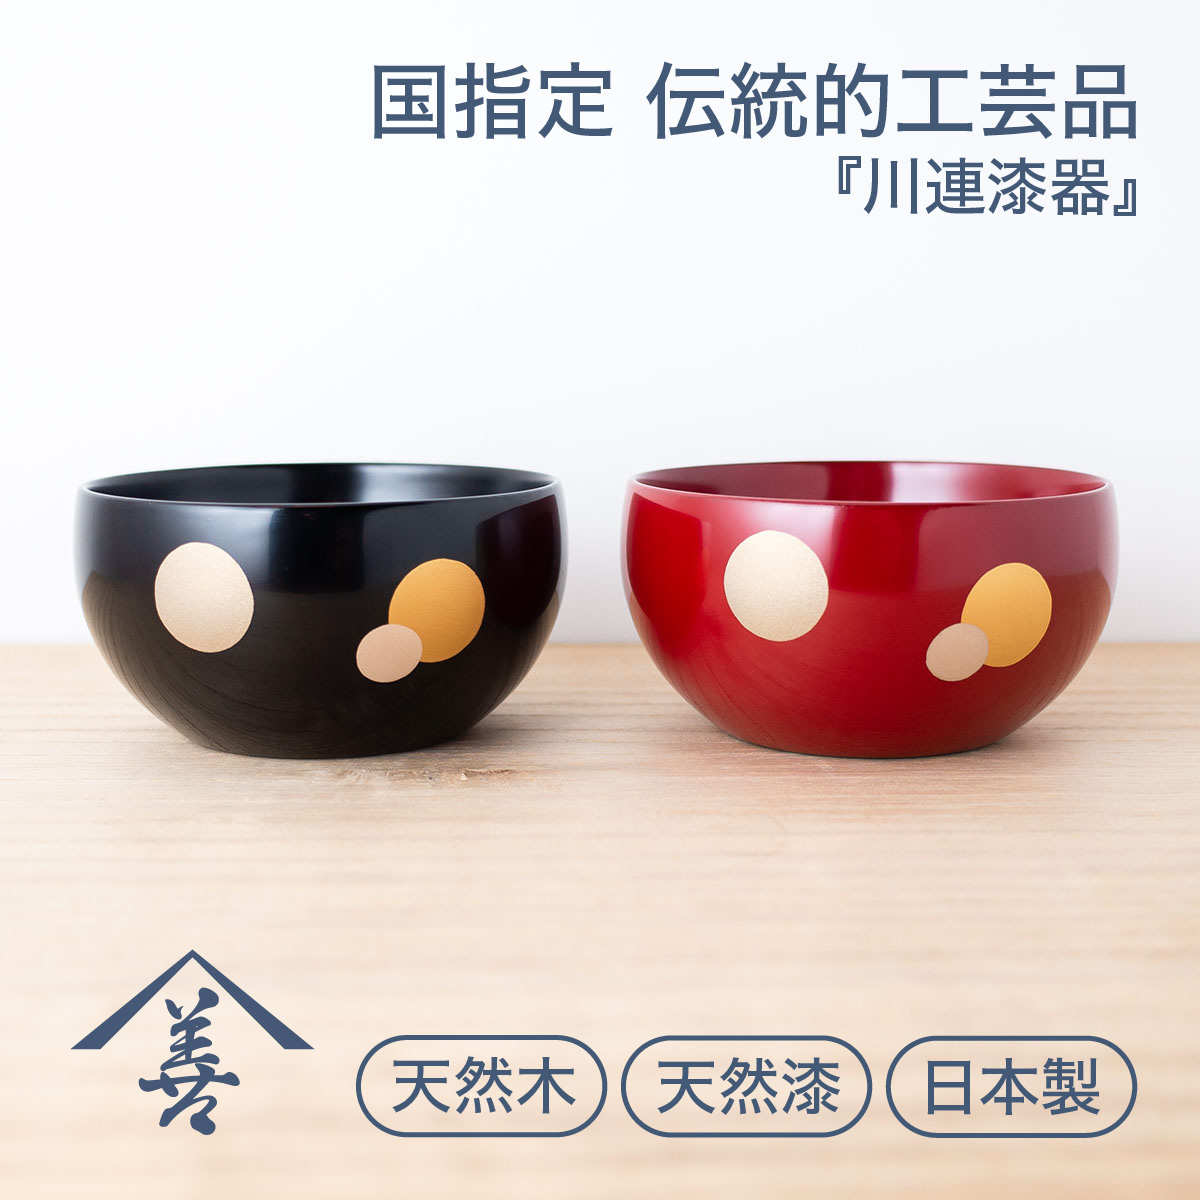 小鉢 食器 おしゃれ 和食器 セット 赤 モダン 黒 和 日本製 ボウル